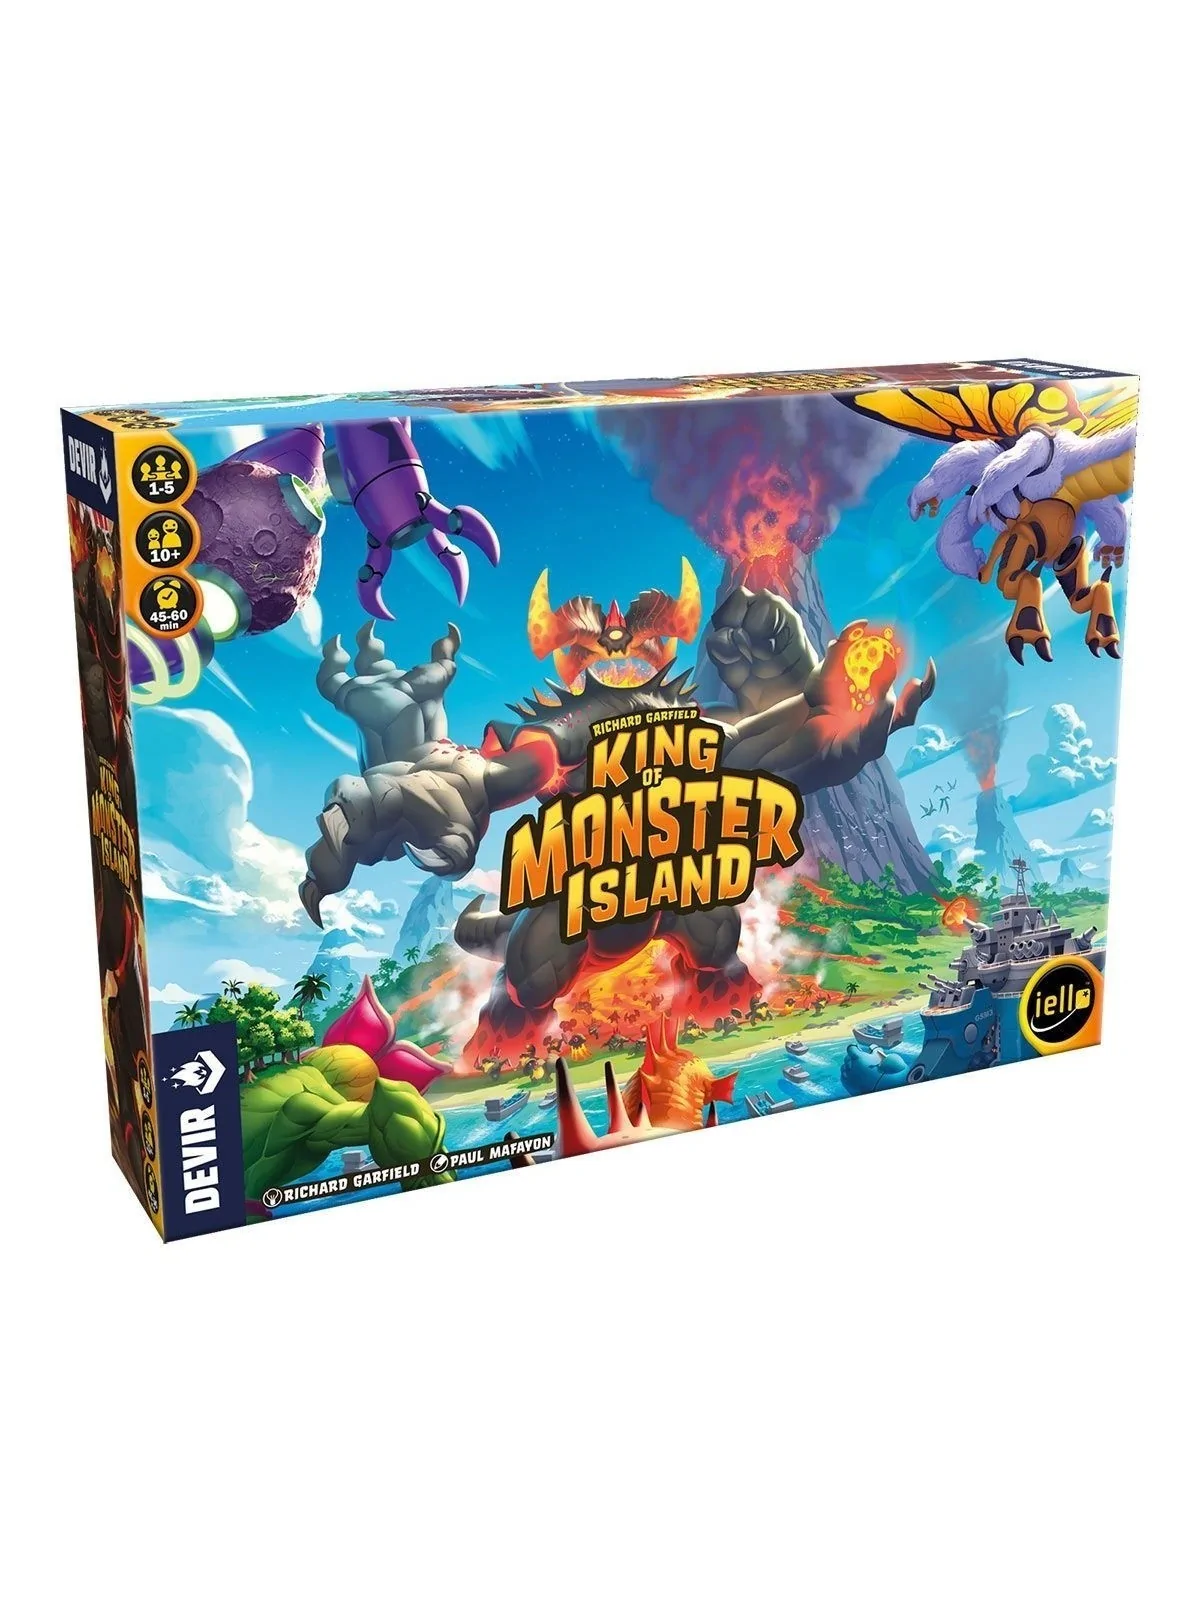 Comprar King of Monster Island barato al mejor precio 53,99 € de Devir